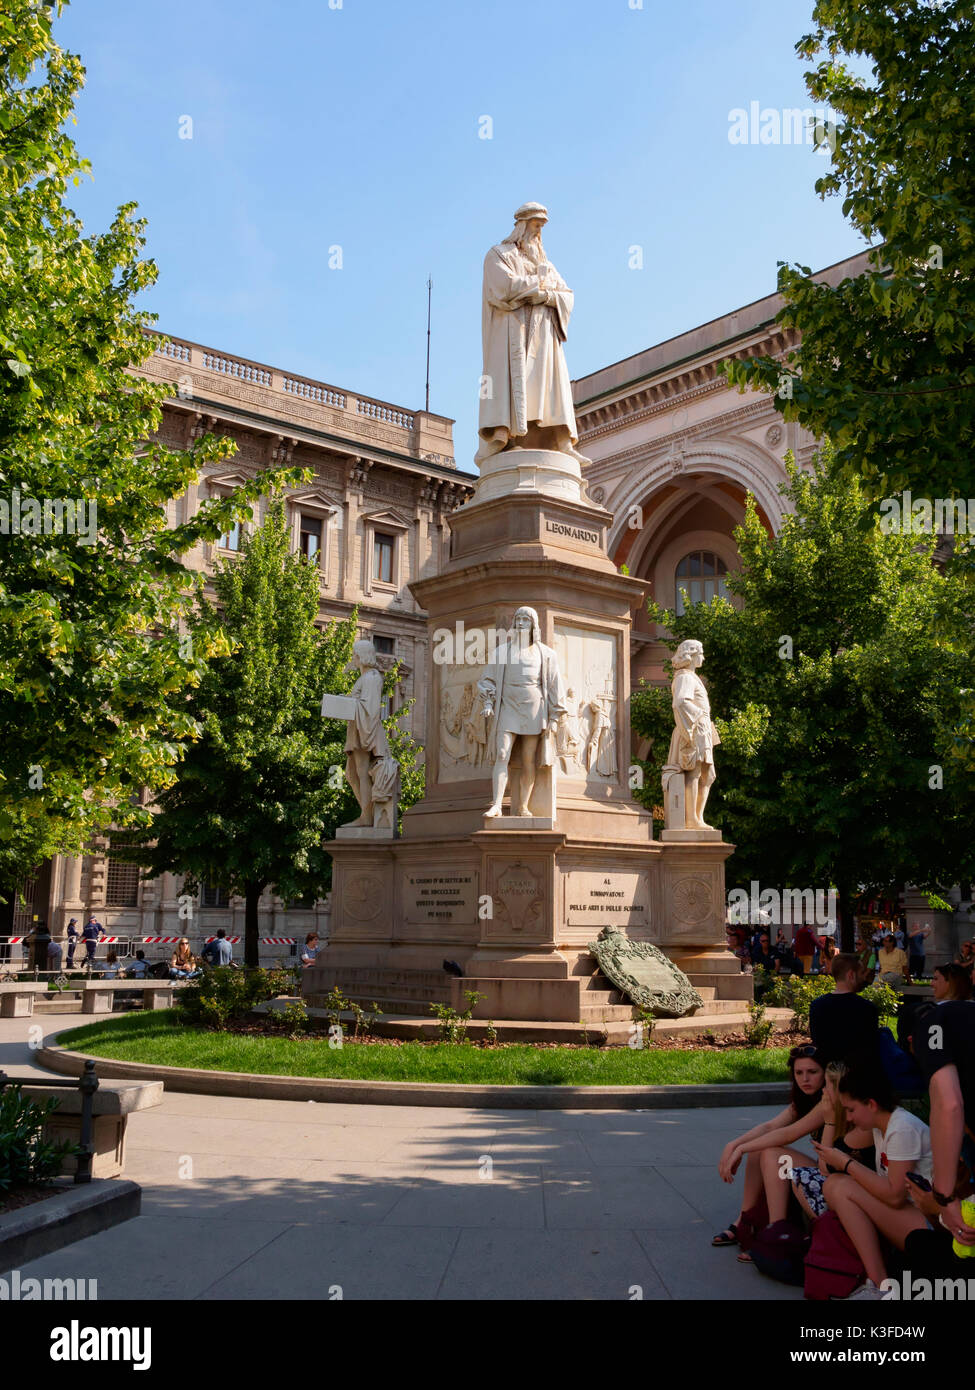 Statue of Leonardo da Vinci, Piazza della Scala, Milan, Italy Stock Photo